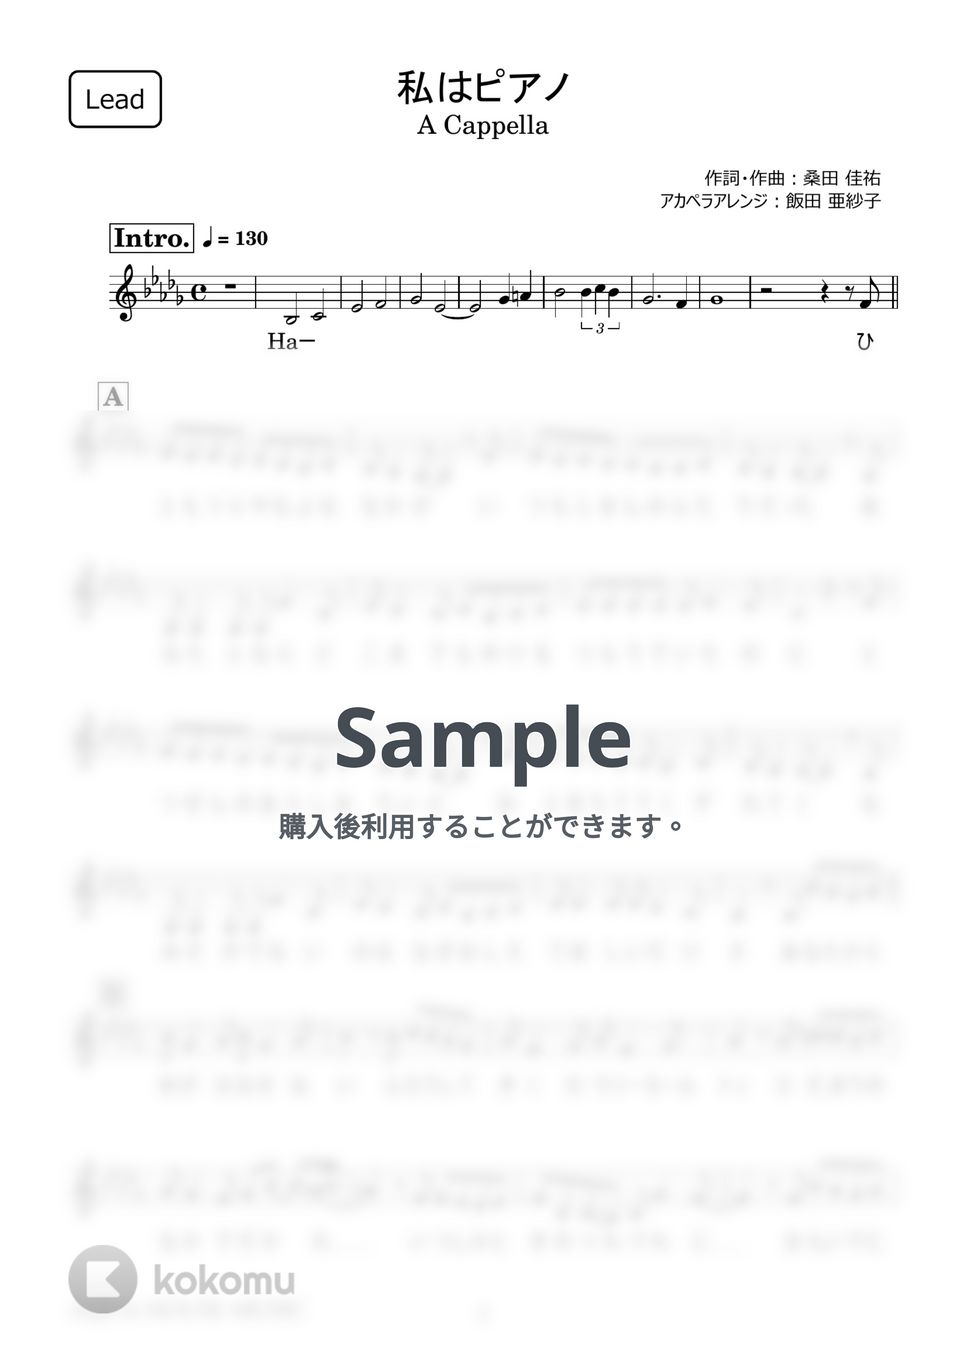 高田 みづえ - 私はピアノ (アカペラ楽譜♪Leadパート譜) by 飯田 亜紗子